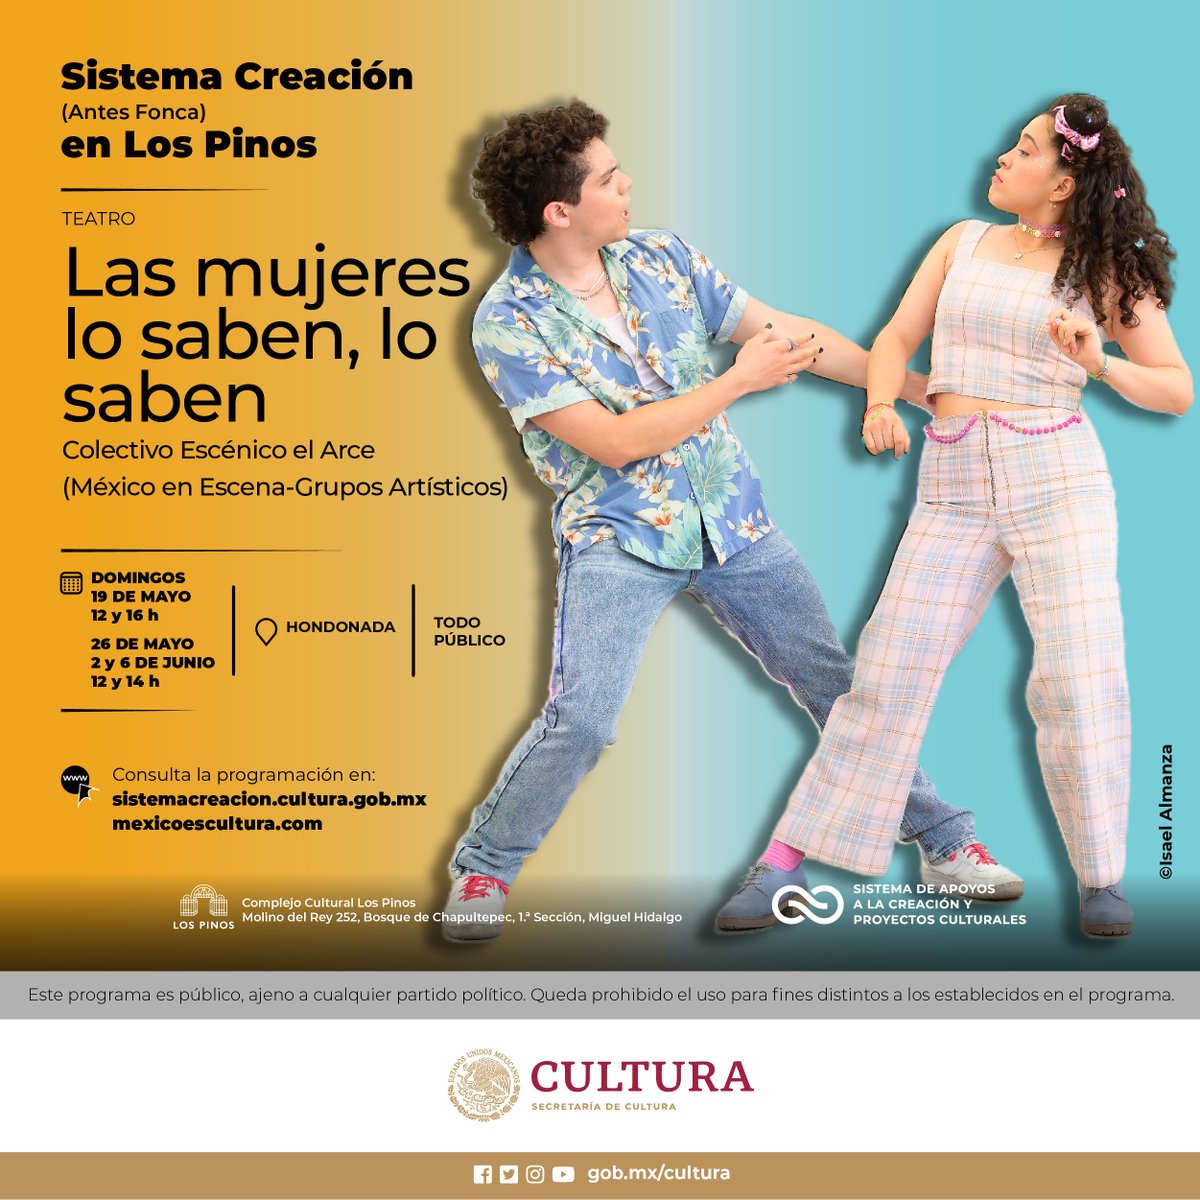 🎭Clitandro y Enriqueta se aman y bailan muy bien las cumbias. Disfruta su historia de amor en “Las mujeres lo saben, lo saben”, obra del @ColectivoElArce (México en Escena).

📅19 y 26 de mayo
📍@CC_LosPinos
🎟Entrada libre

#ChapultepecNaturalezaYCultura
@cultura_mx